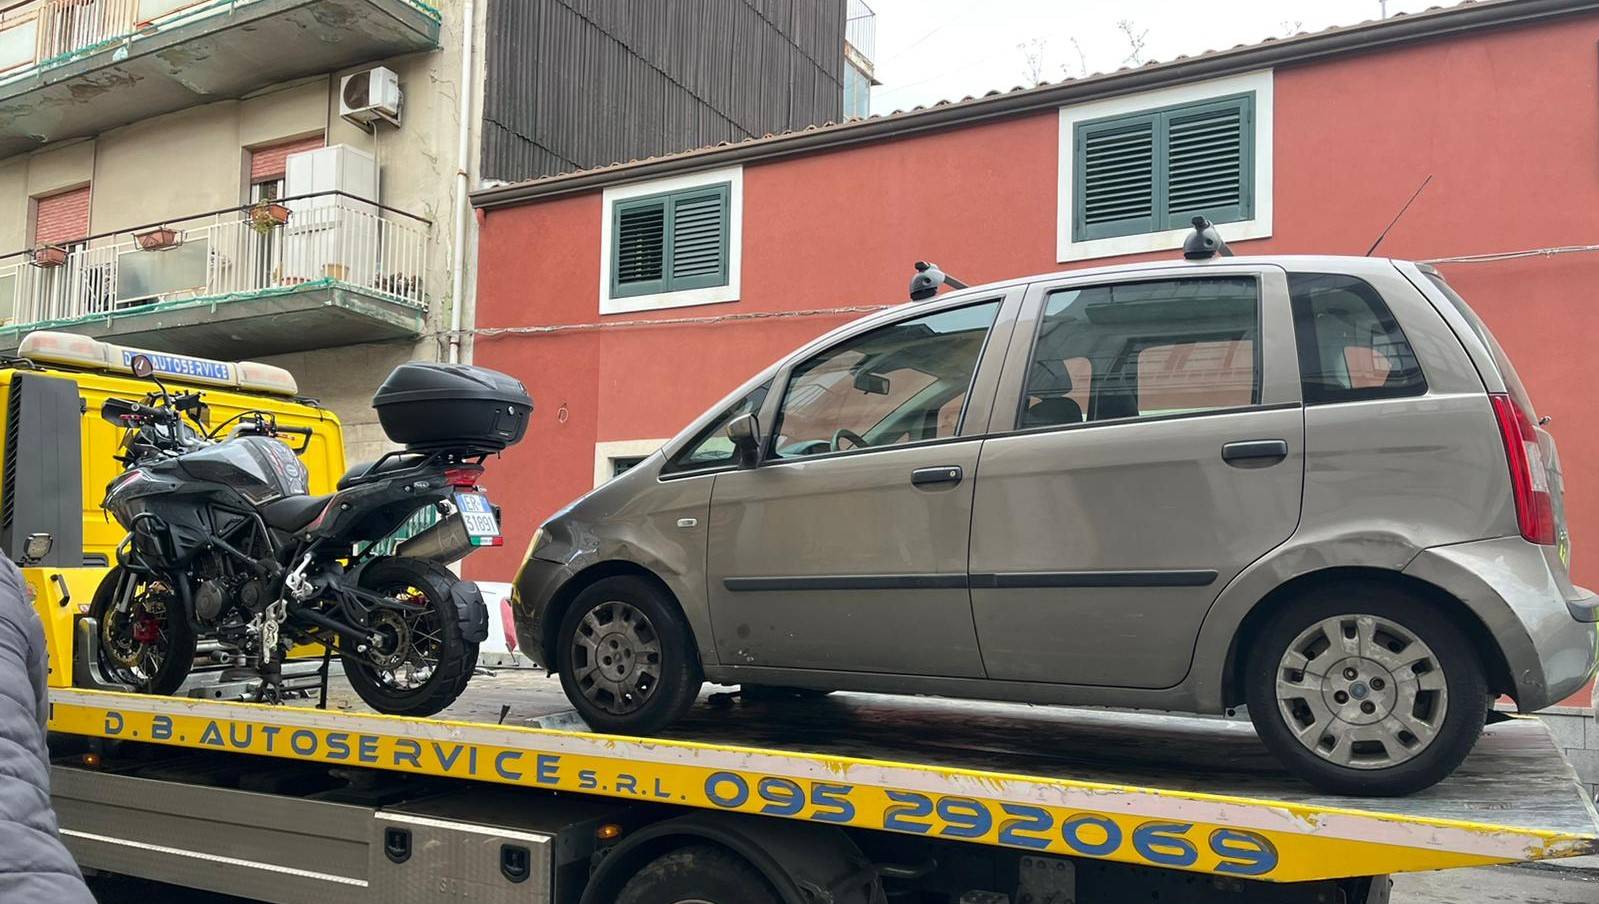 Picanello-moto-rubata-e-auto-danneggiata-dopo-inseguimento-a-Picanello.jpg